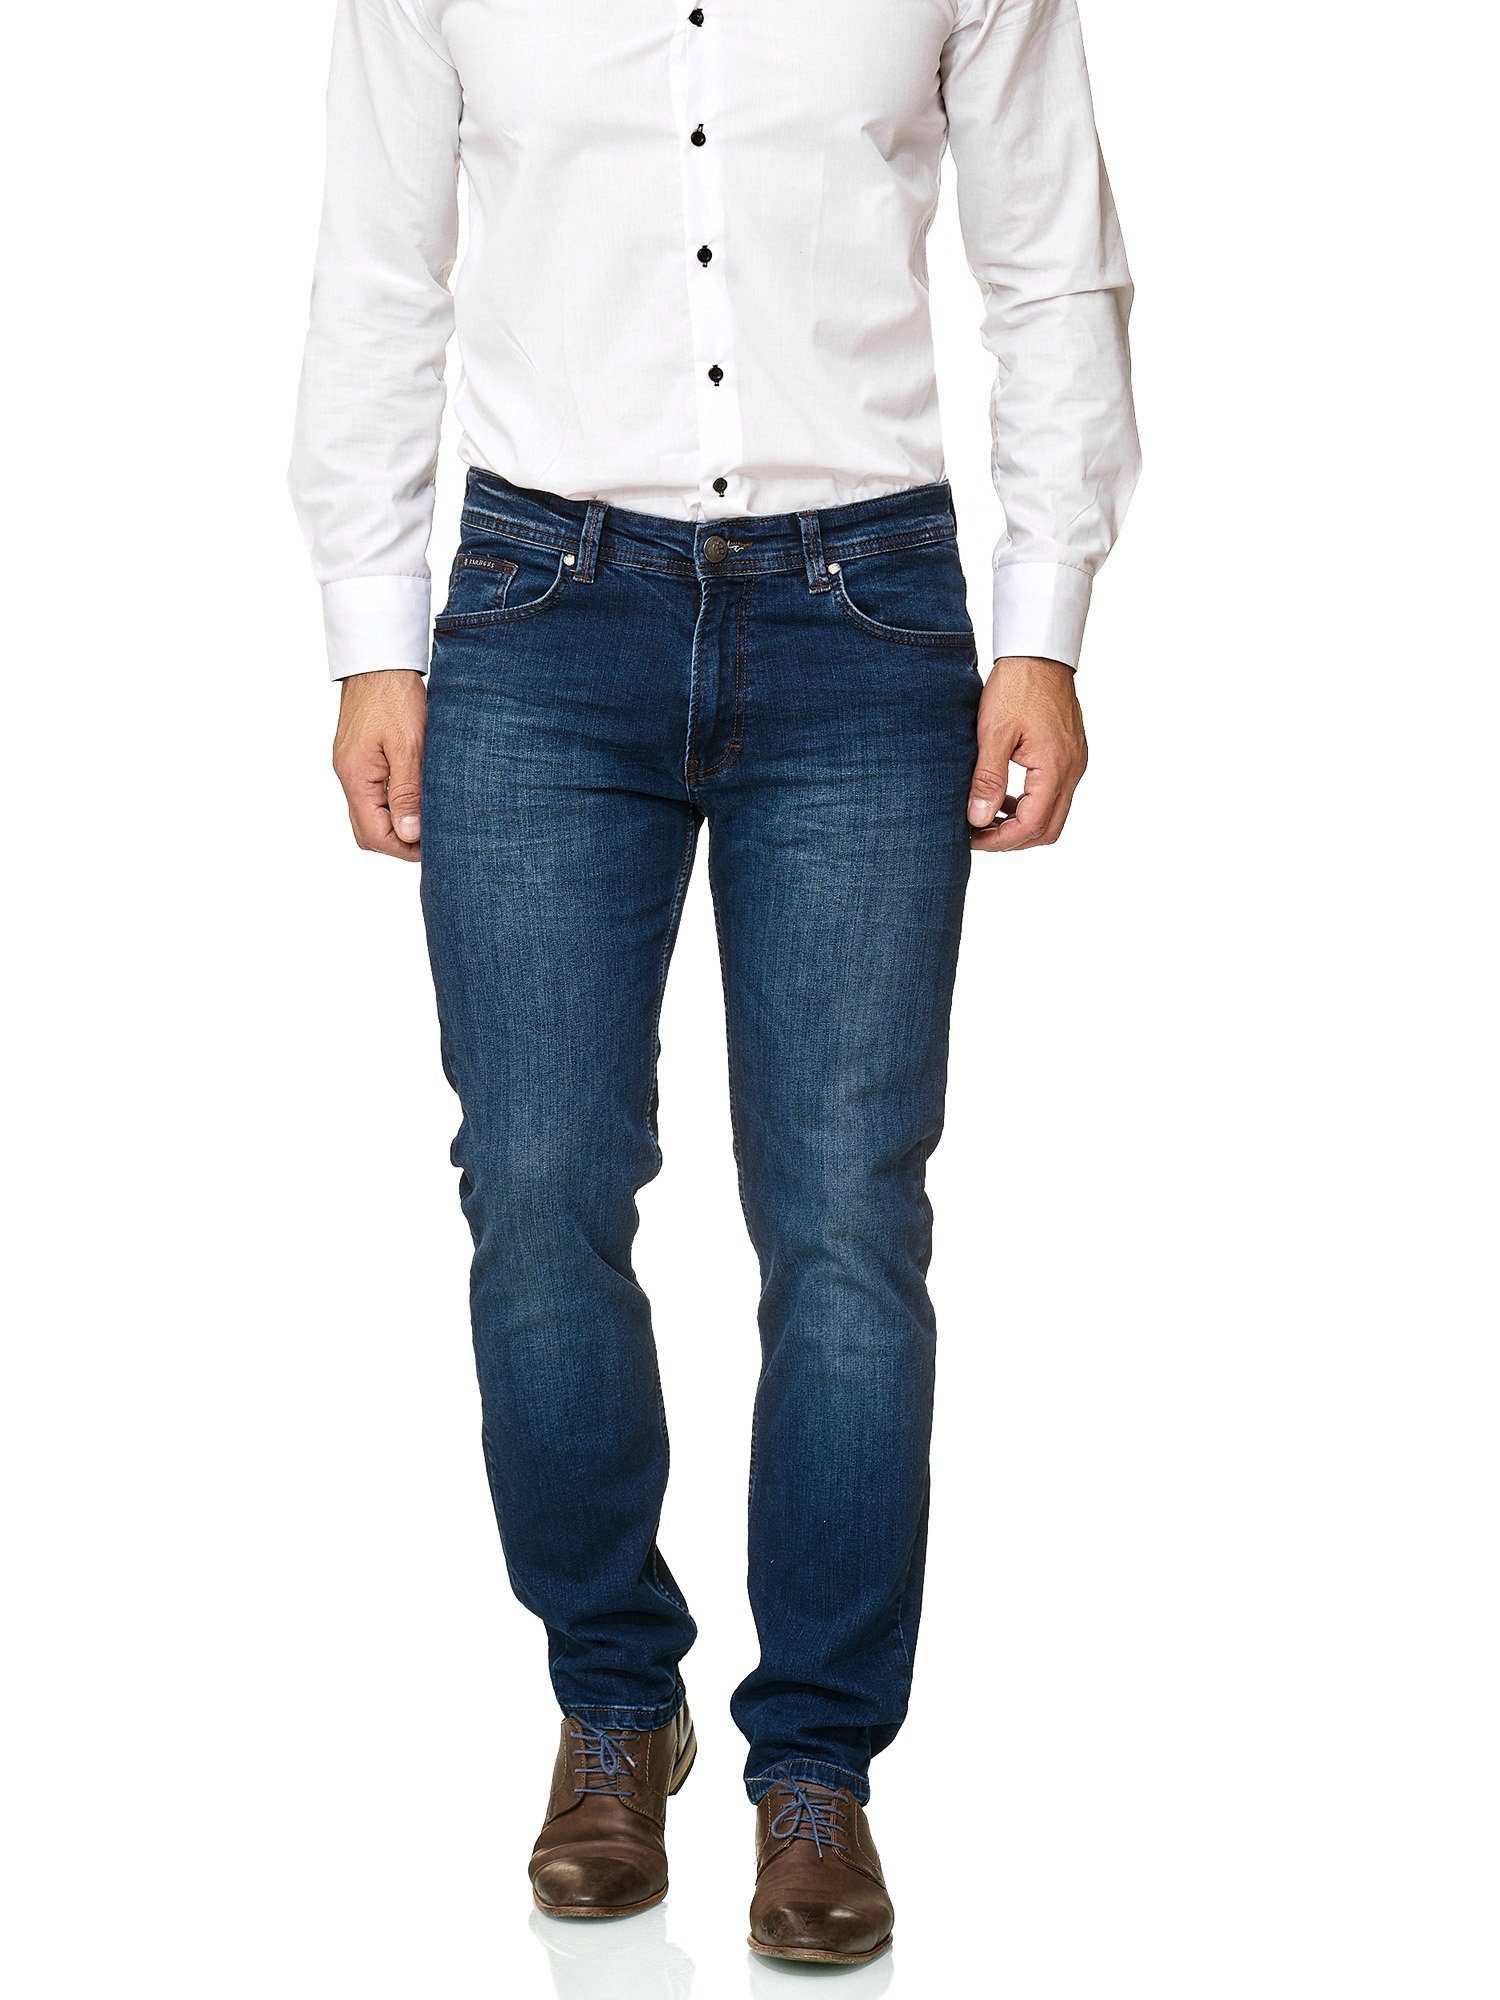 BARBONS 5-Pocket-Jeans Herren Regular Fit 5-Pocket Design 02-Blau